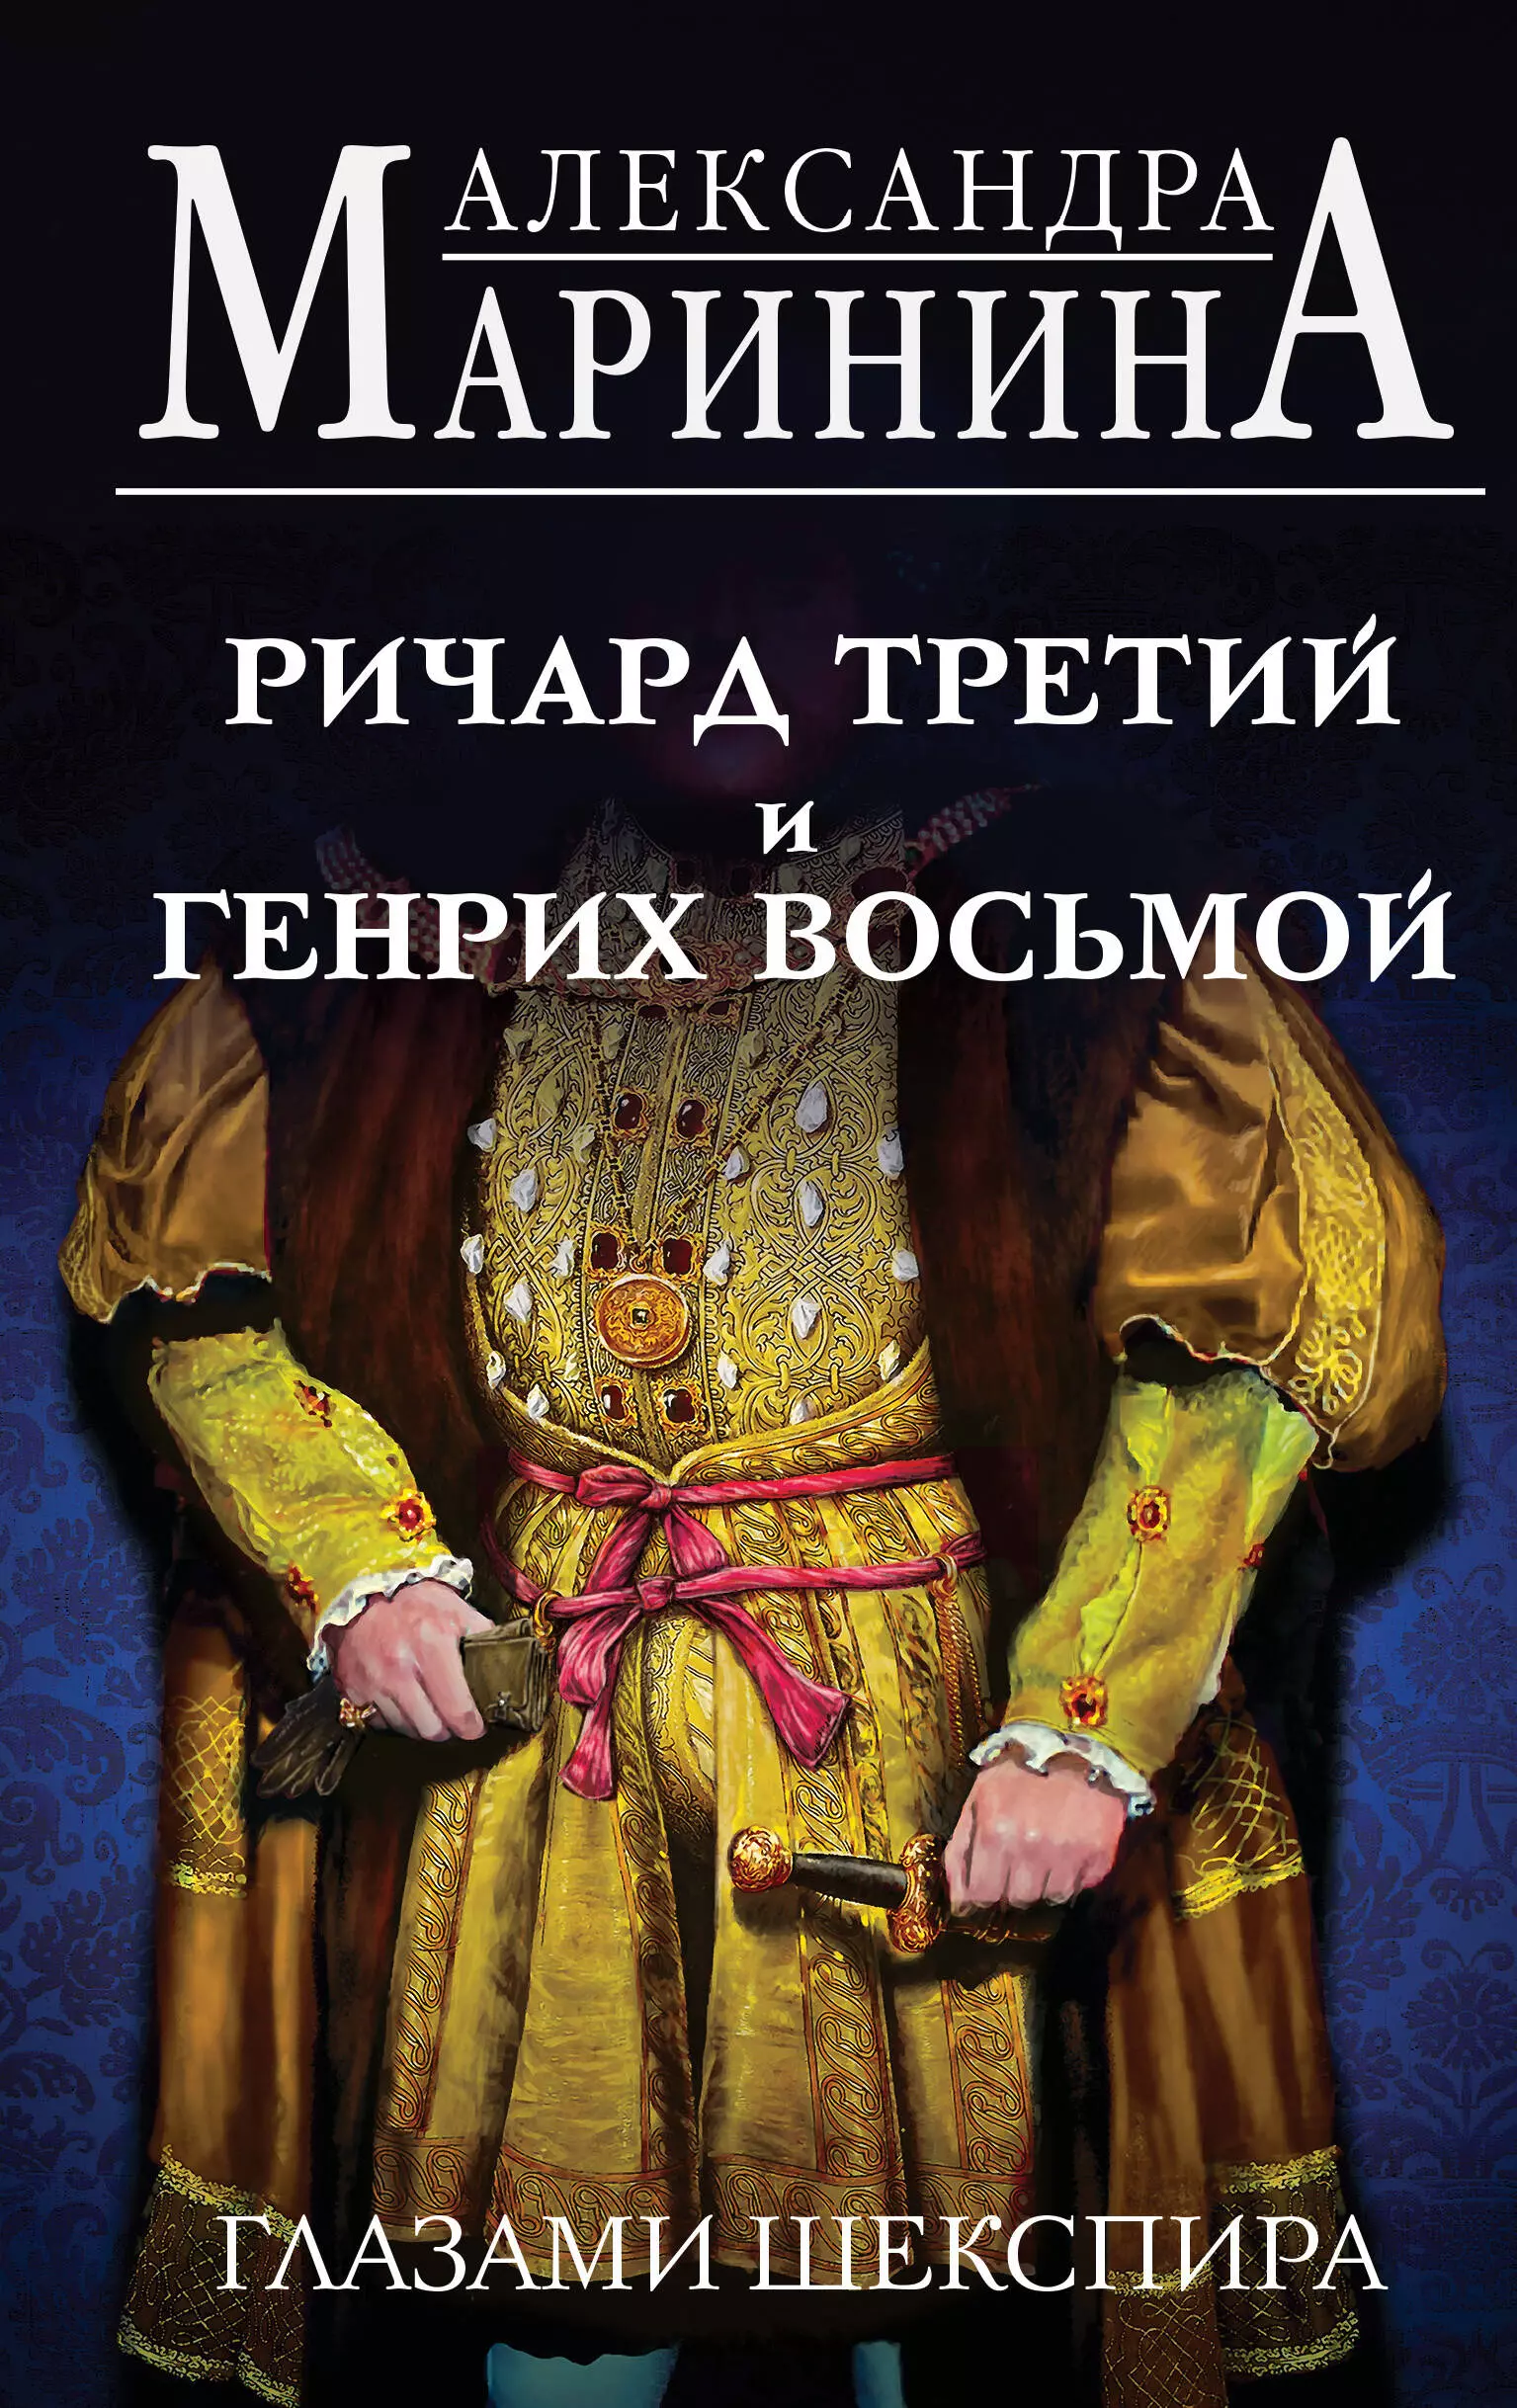 Маринина Александра Борисовна - Ричард Третий и Генрих Восьмой глазами Шекспира